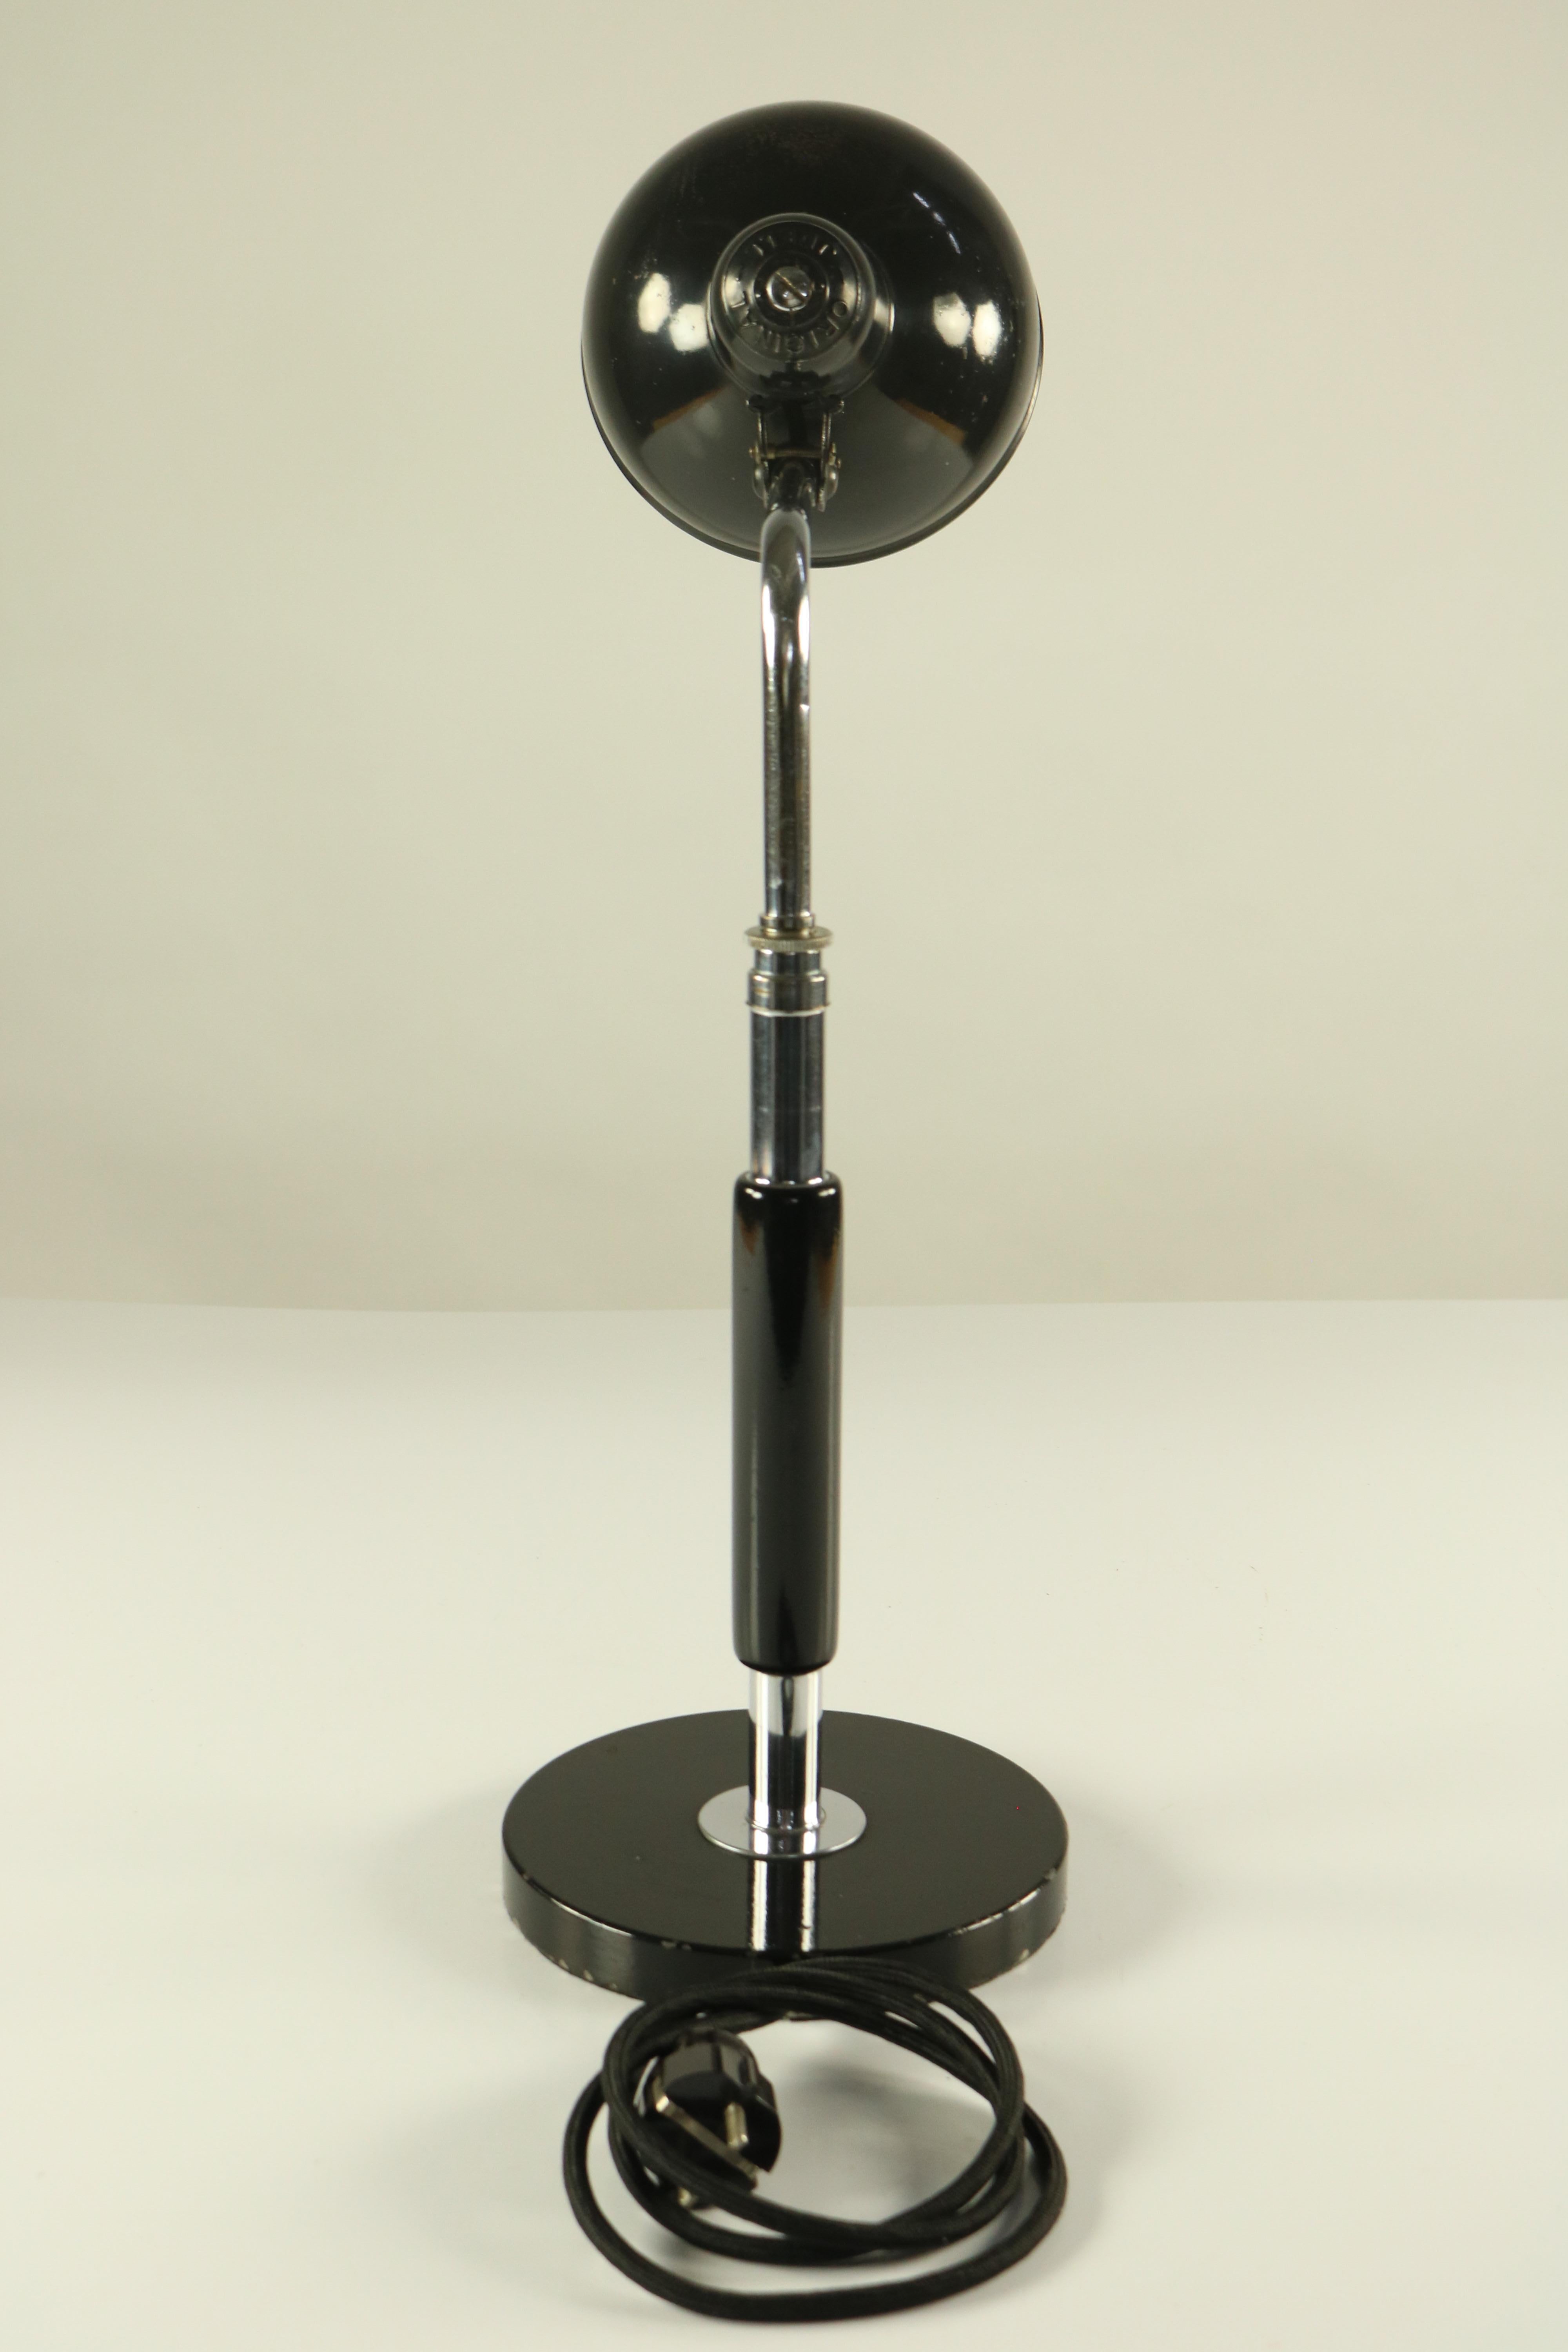 1930s desk lamp